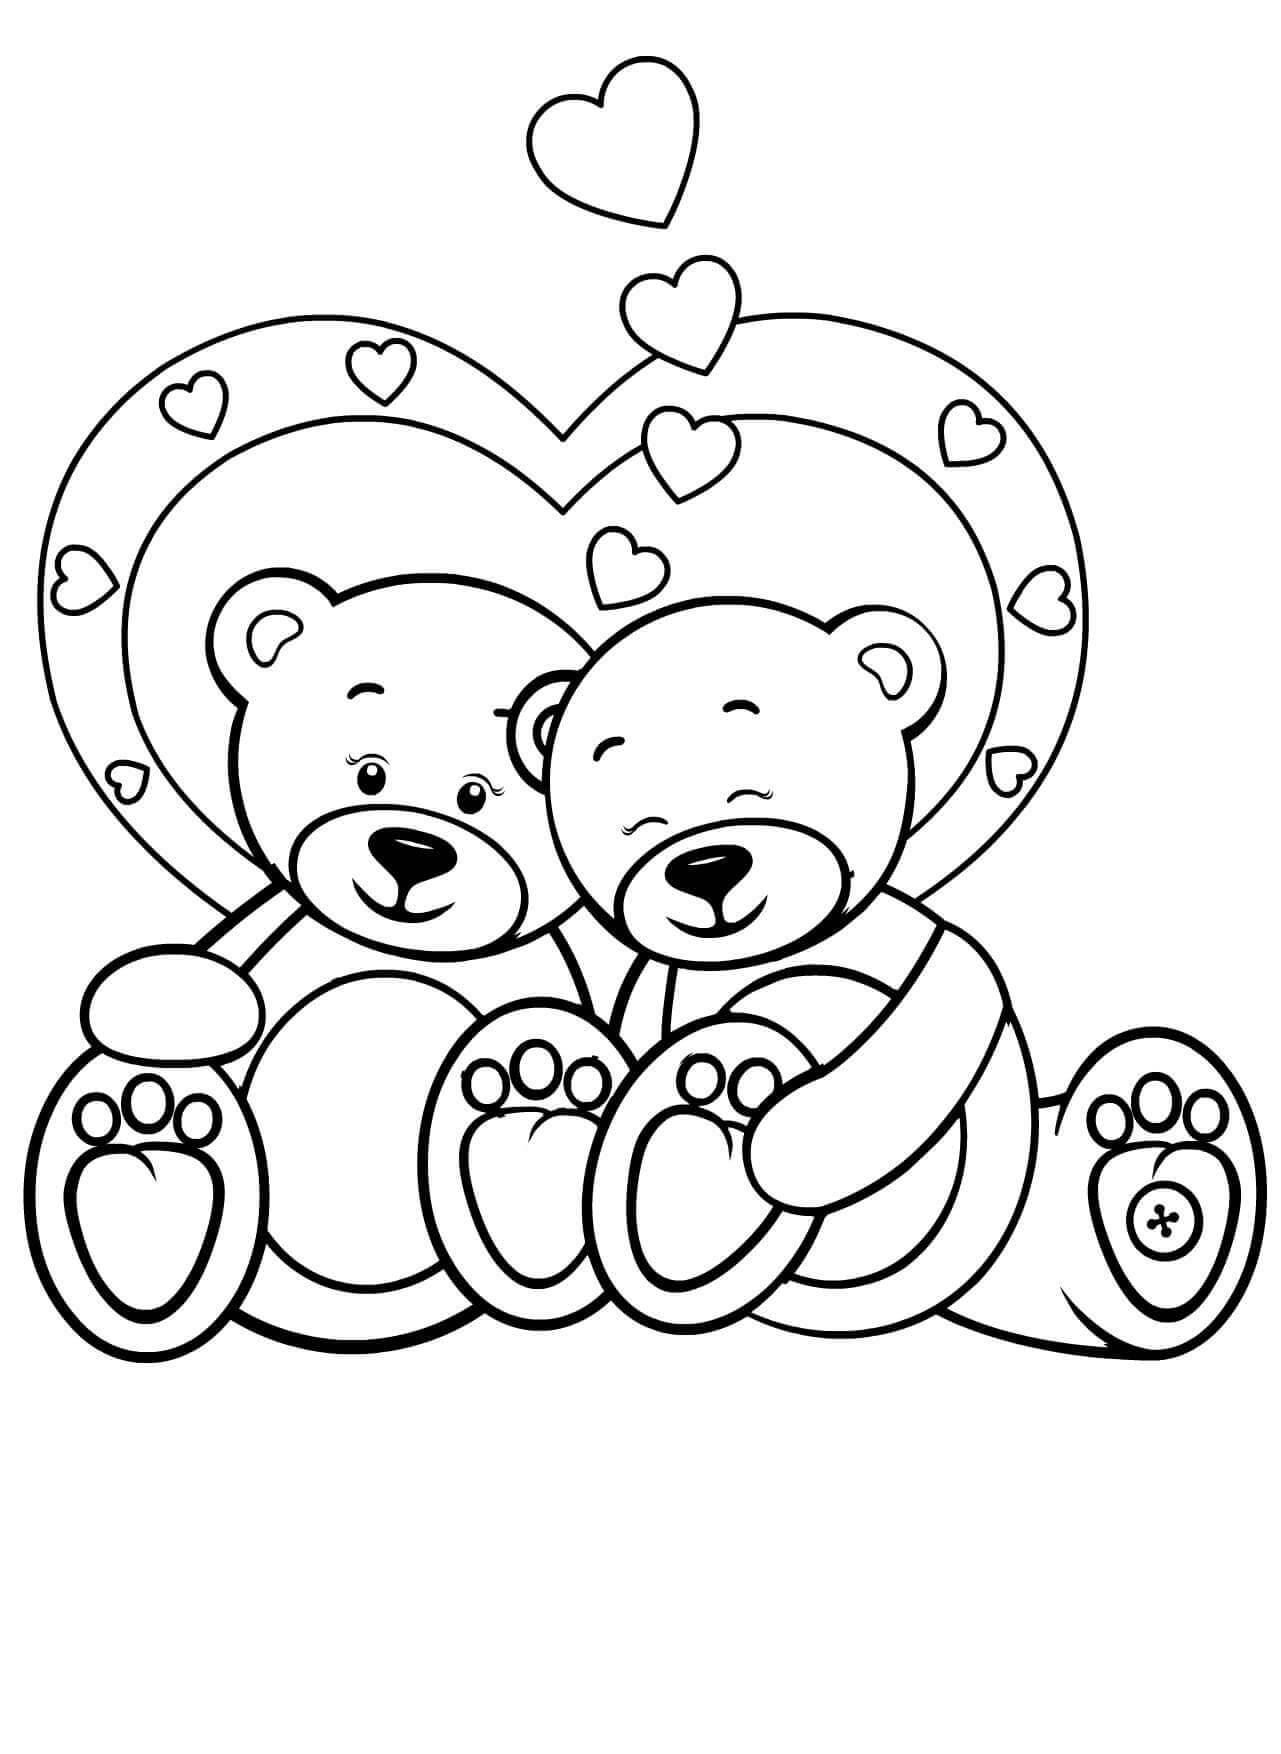 Dois Ursinhos De Pelúcia No Dia Dos Namorados para colorir